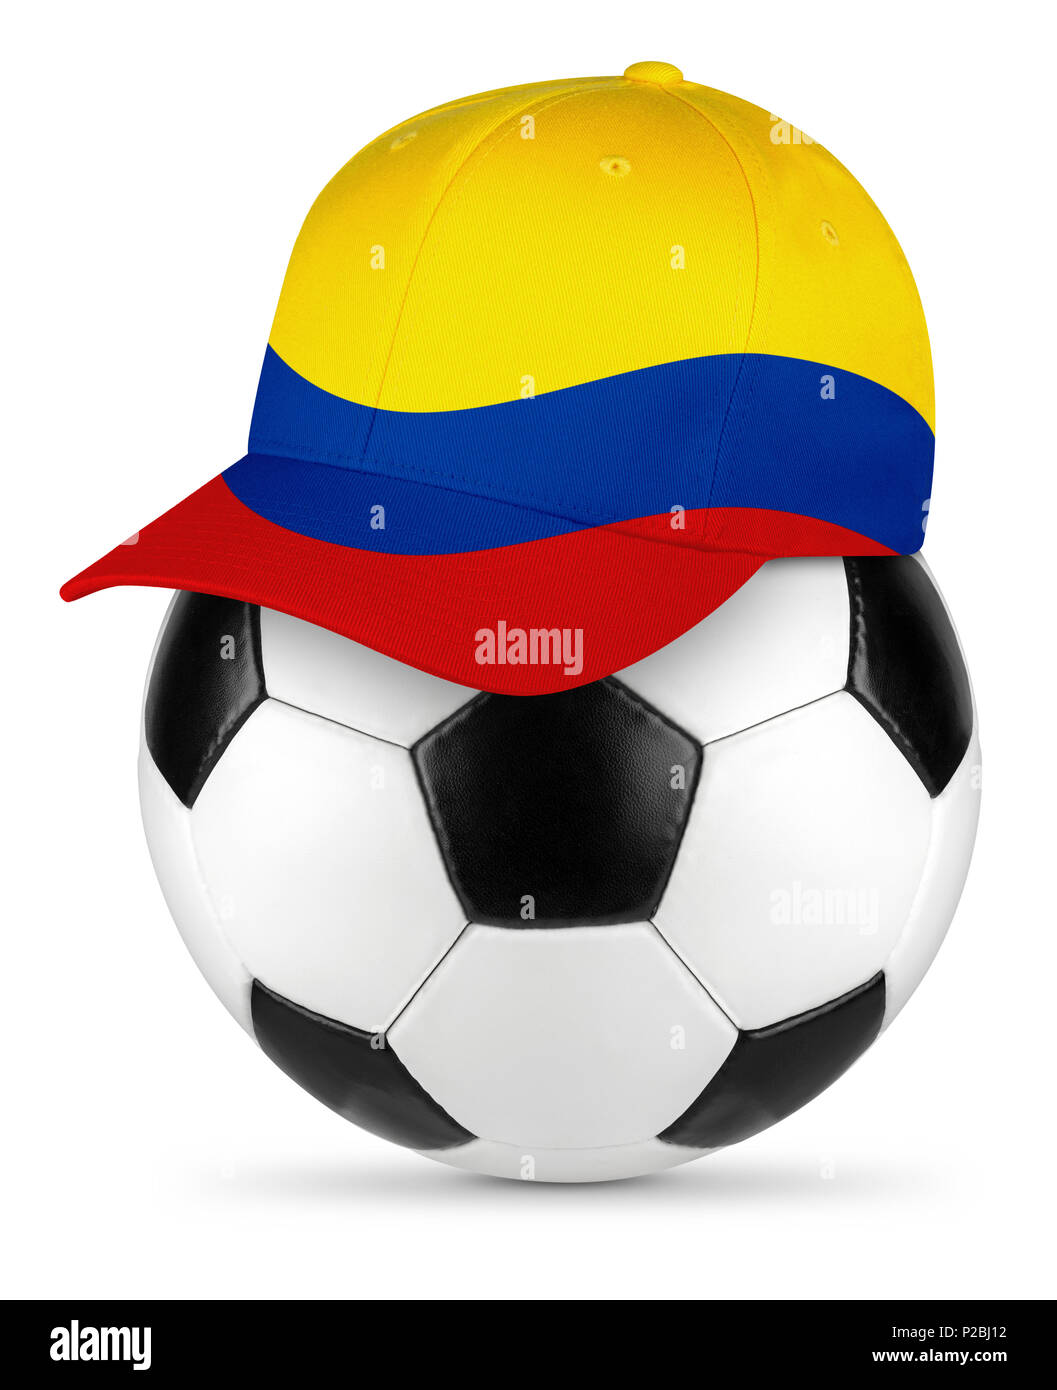 Classic noir en cuir blanc ballon de soccer Colombie-Britannique drapeau colombien amateur de baseball cap fond isolé concept sport football Banque D'Images